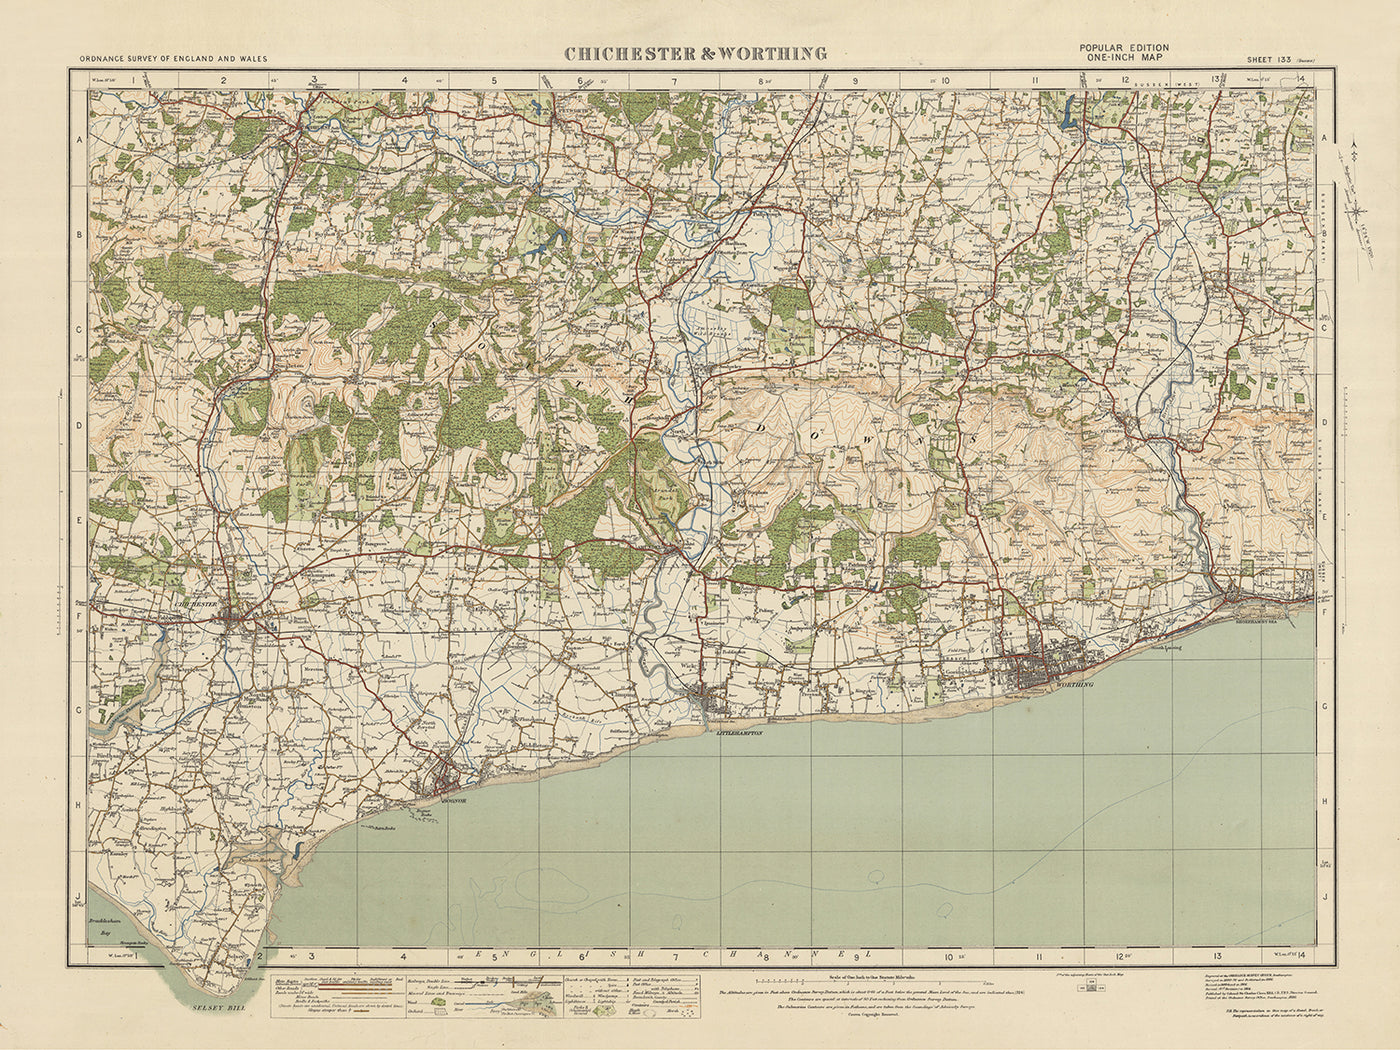 Old Ordnance Survey Map, Blatt 133 – Chichester & Worthing, 1925: Bognor Regis, Littlehampton, Selsey, Worthing, Midhurst